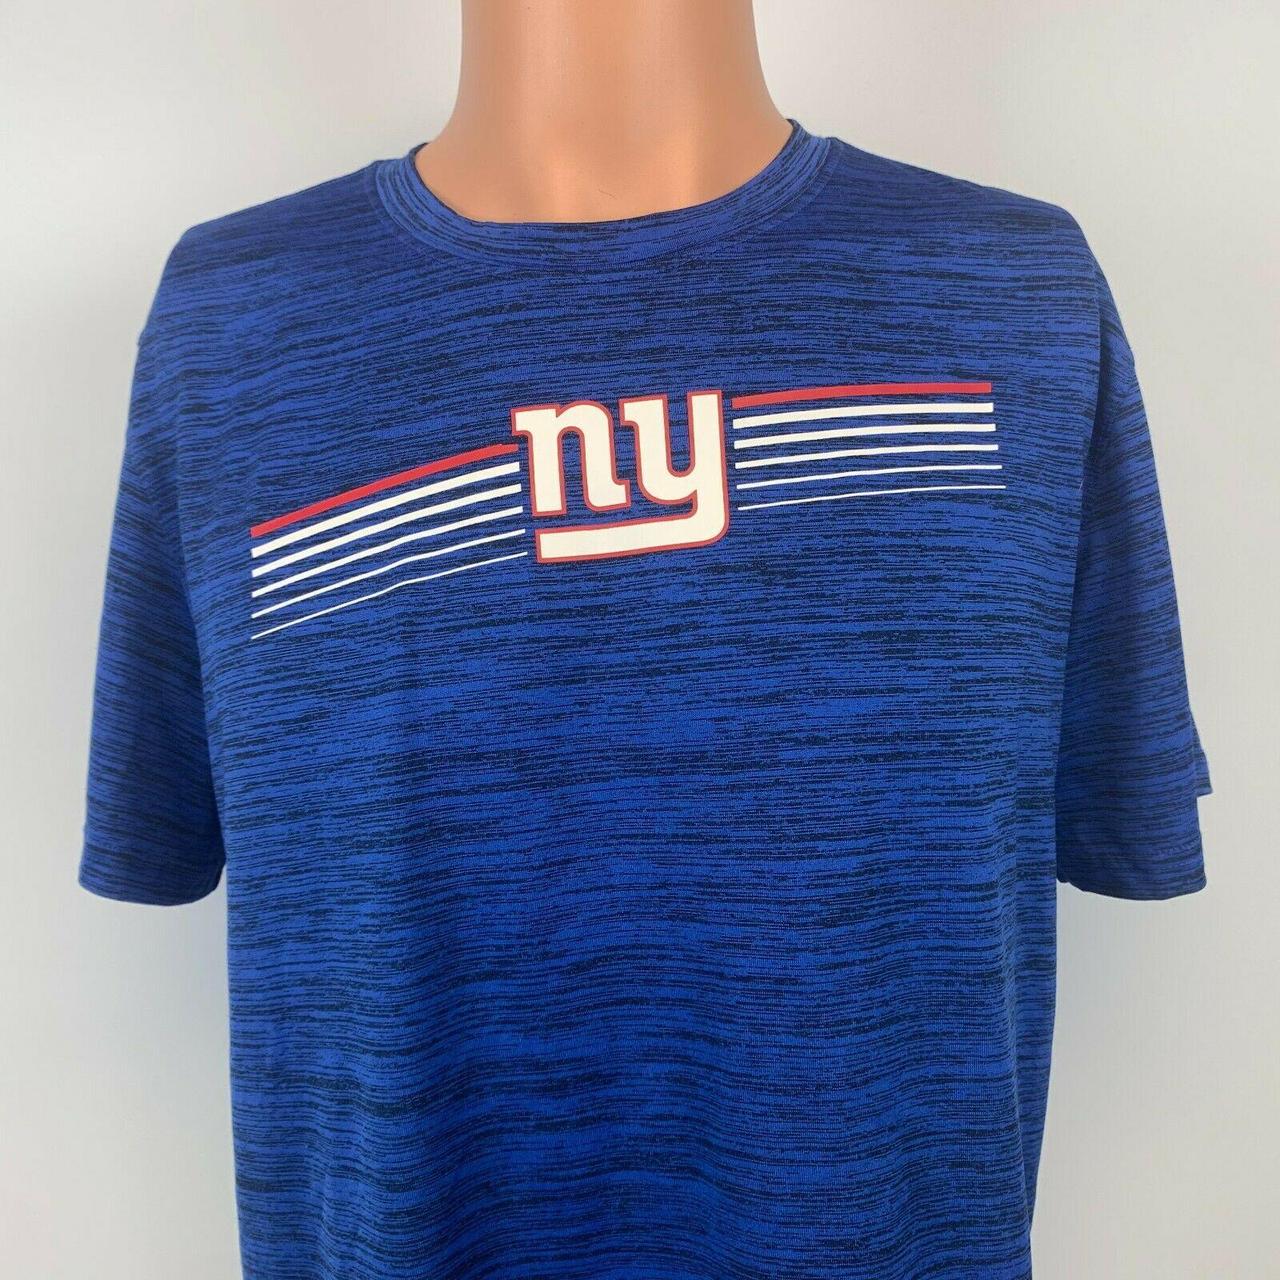 Nike (NFL New York Giants) Men's T-Shirt.